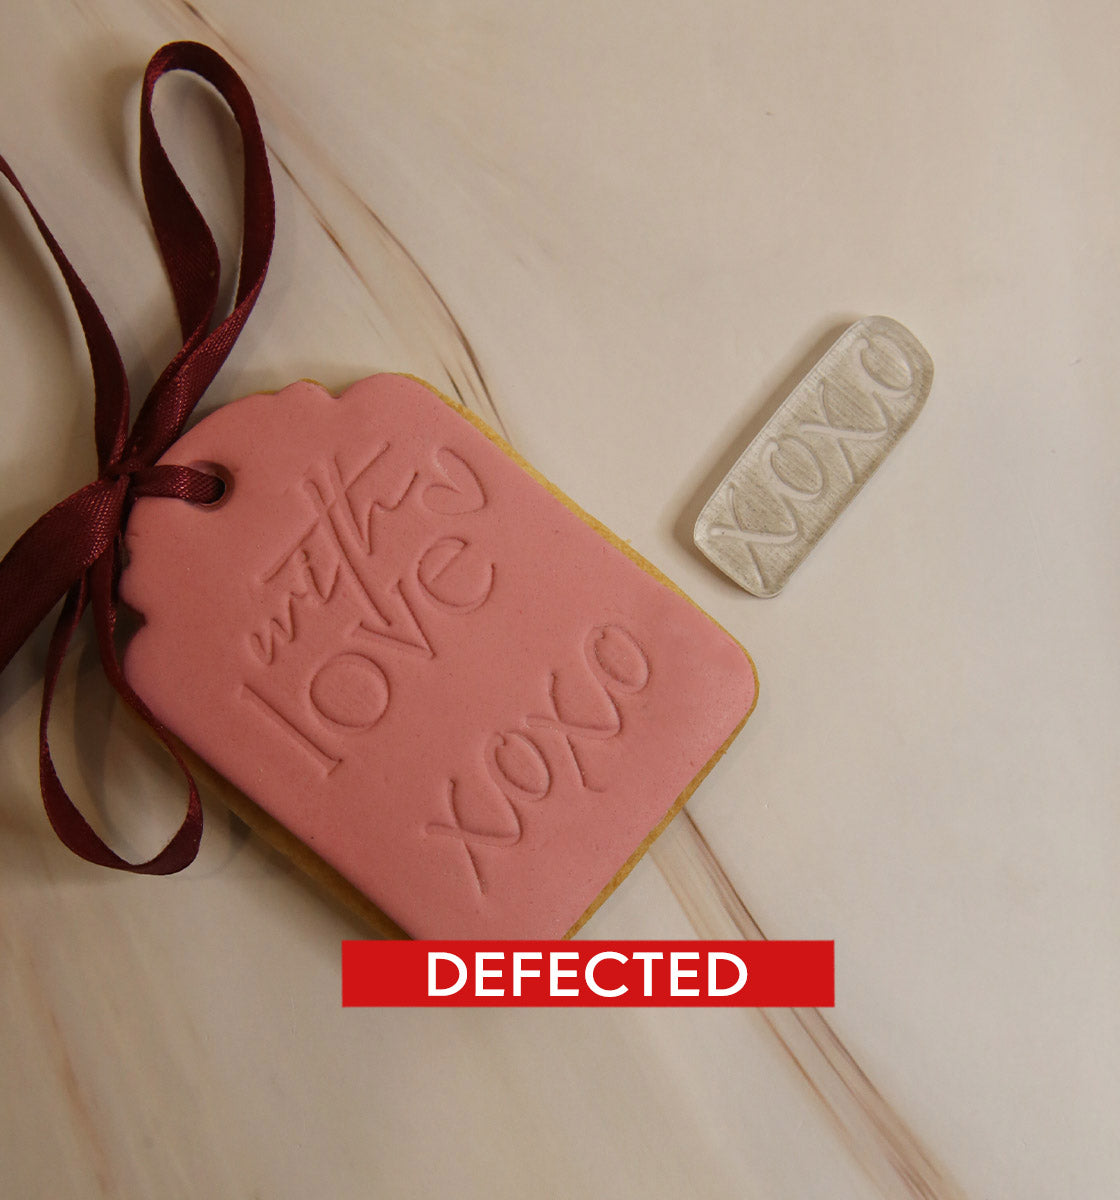 SLIGHTLY DEFECTED - XOXO mini sleek stamp